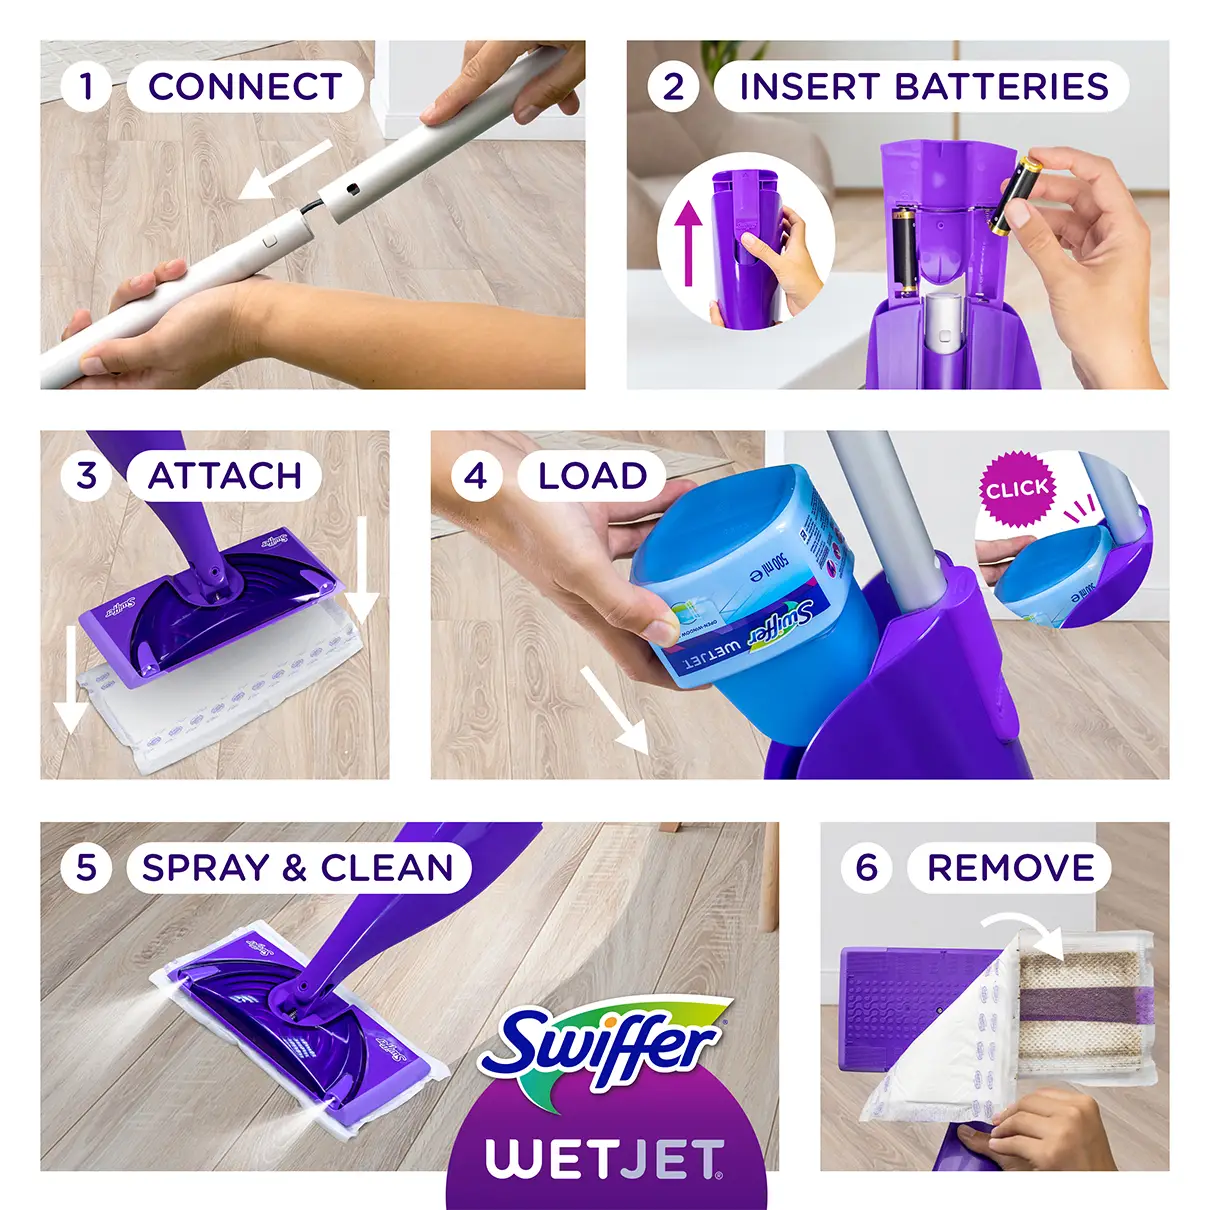 Swiffer WetJet Floor Spray Mop Review: Good All-Purpose Mop